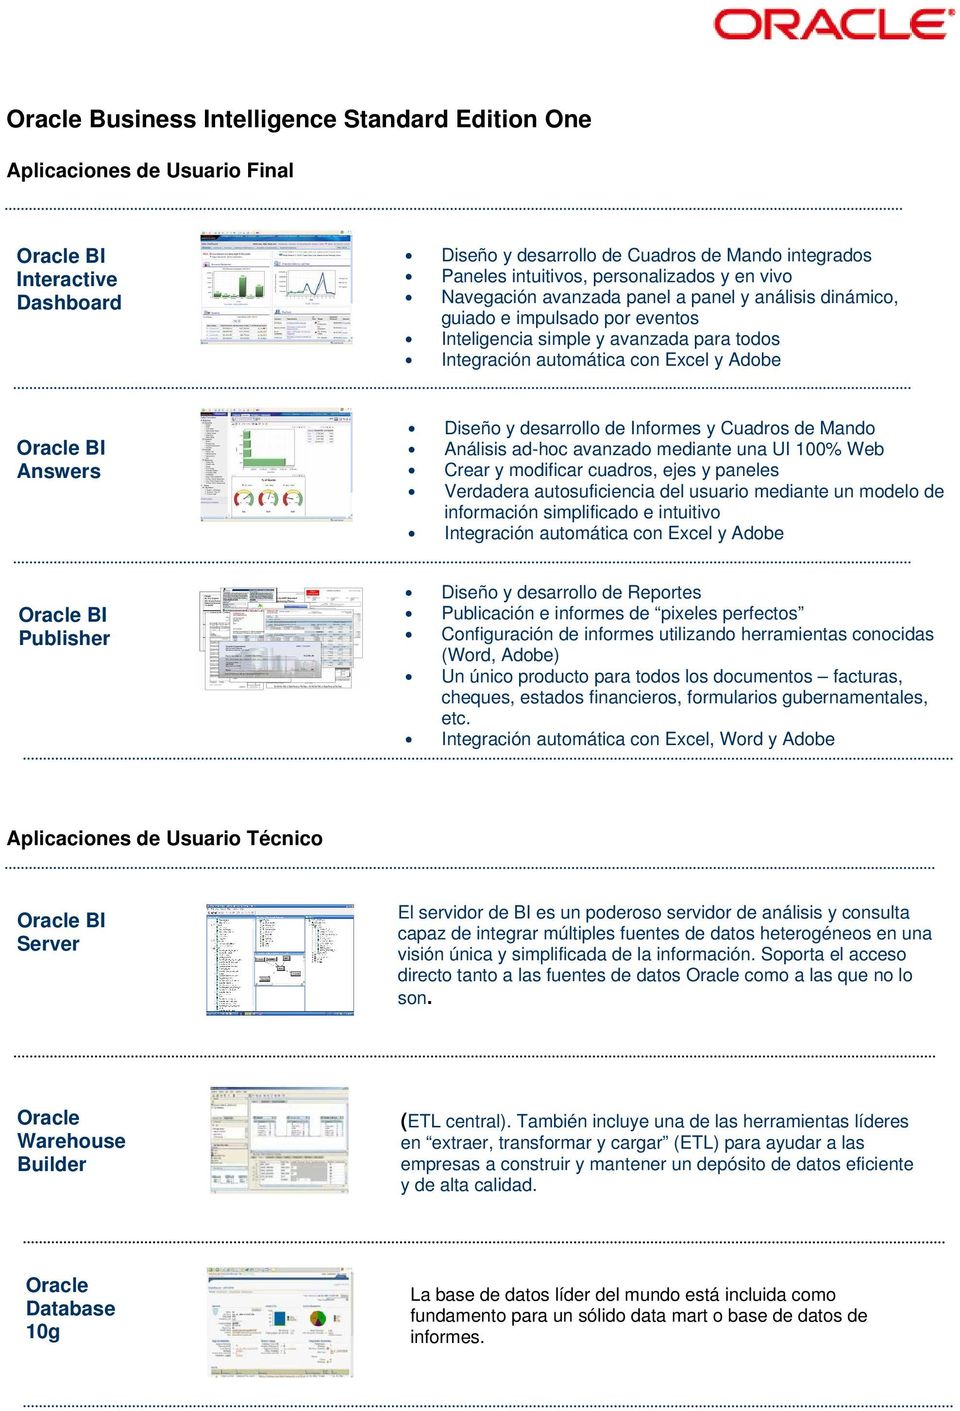 Informes y Cuadros de Mando Análisis ad-hoc avanzado mediante una UI 100% Web Crear y modificar cuadros, ejes y paneles Verdadera autosuficiencia del usuario mediante un modelo de información